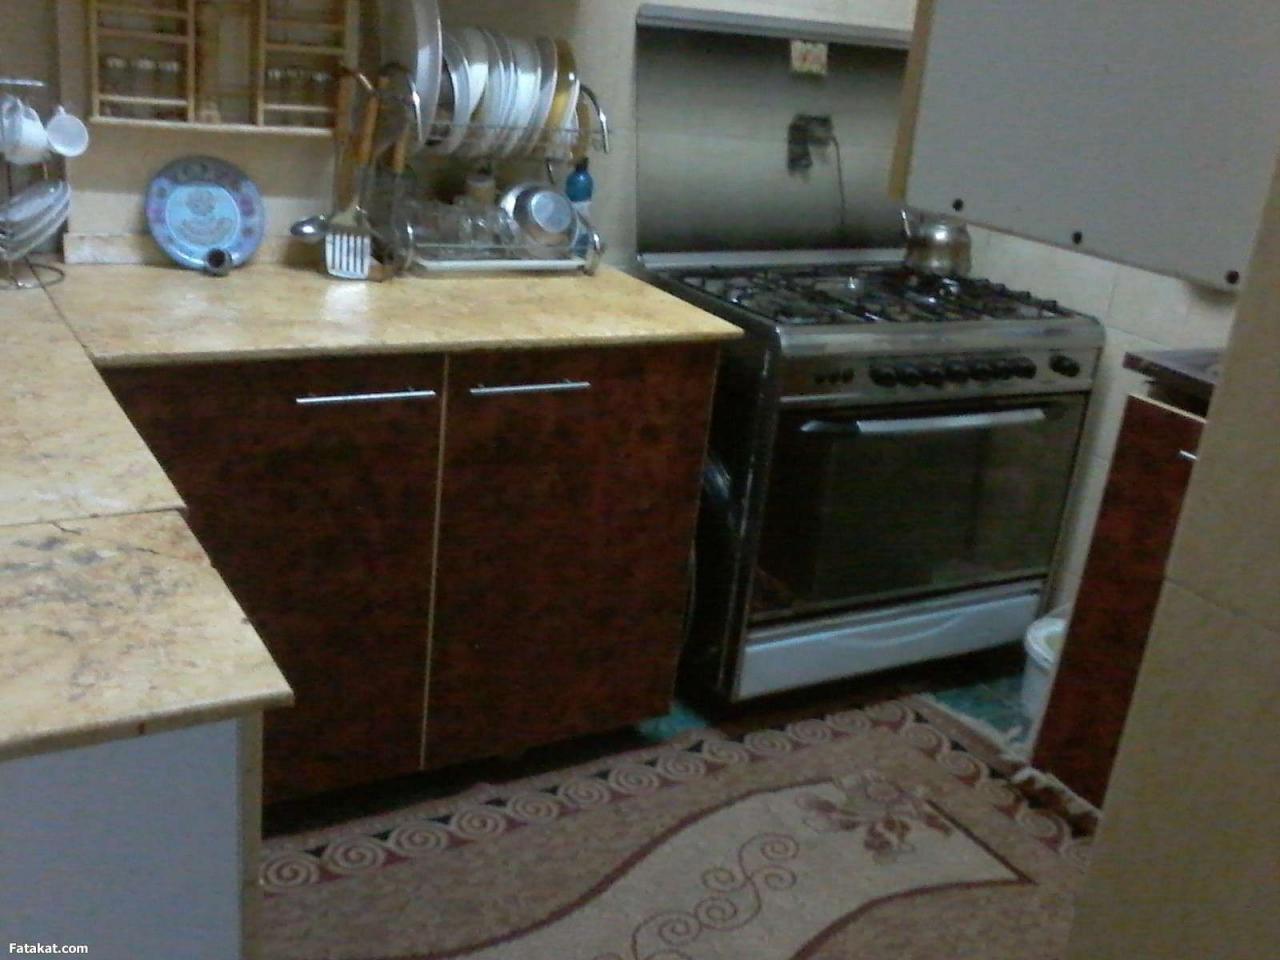 796 1 مطبخي هوجنتي للنظافة والتميز عنوان مطبخ بنوتة صوري تتحدث Ahmd